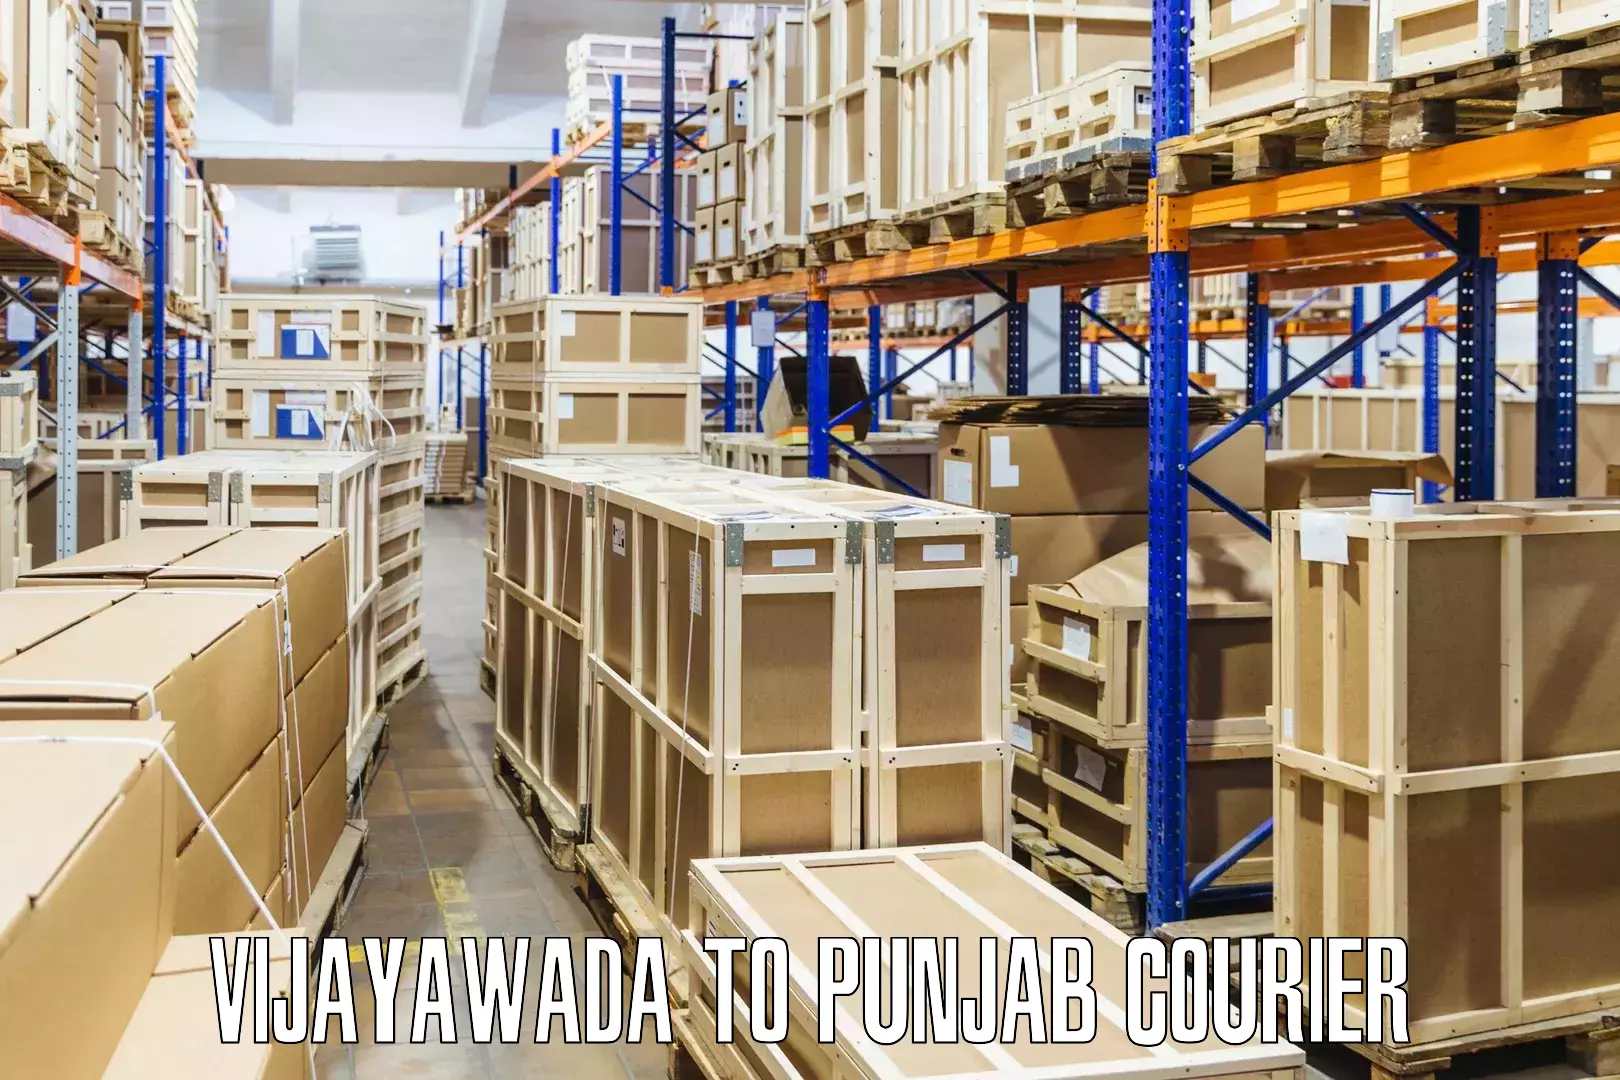 Smart shipping technology Vijayawada to Punjab